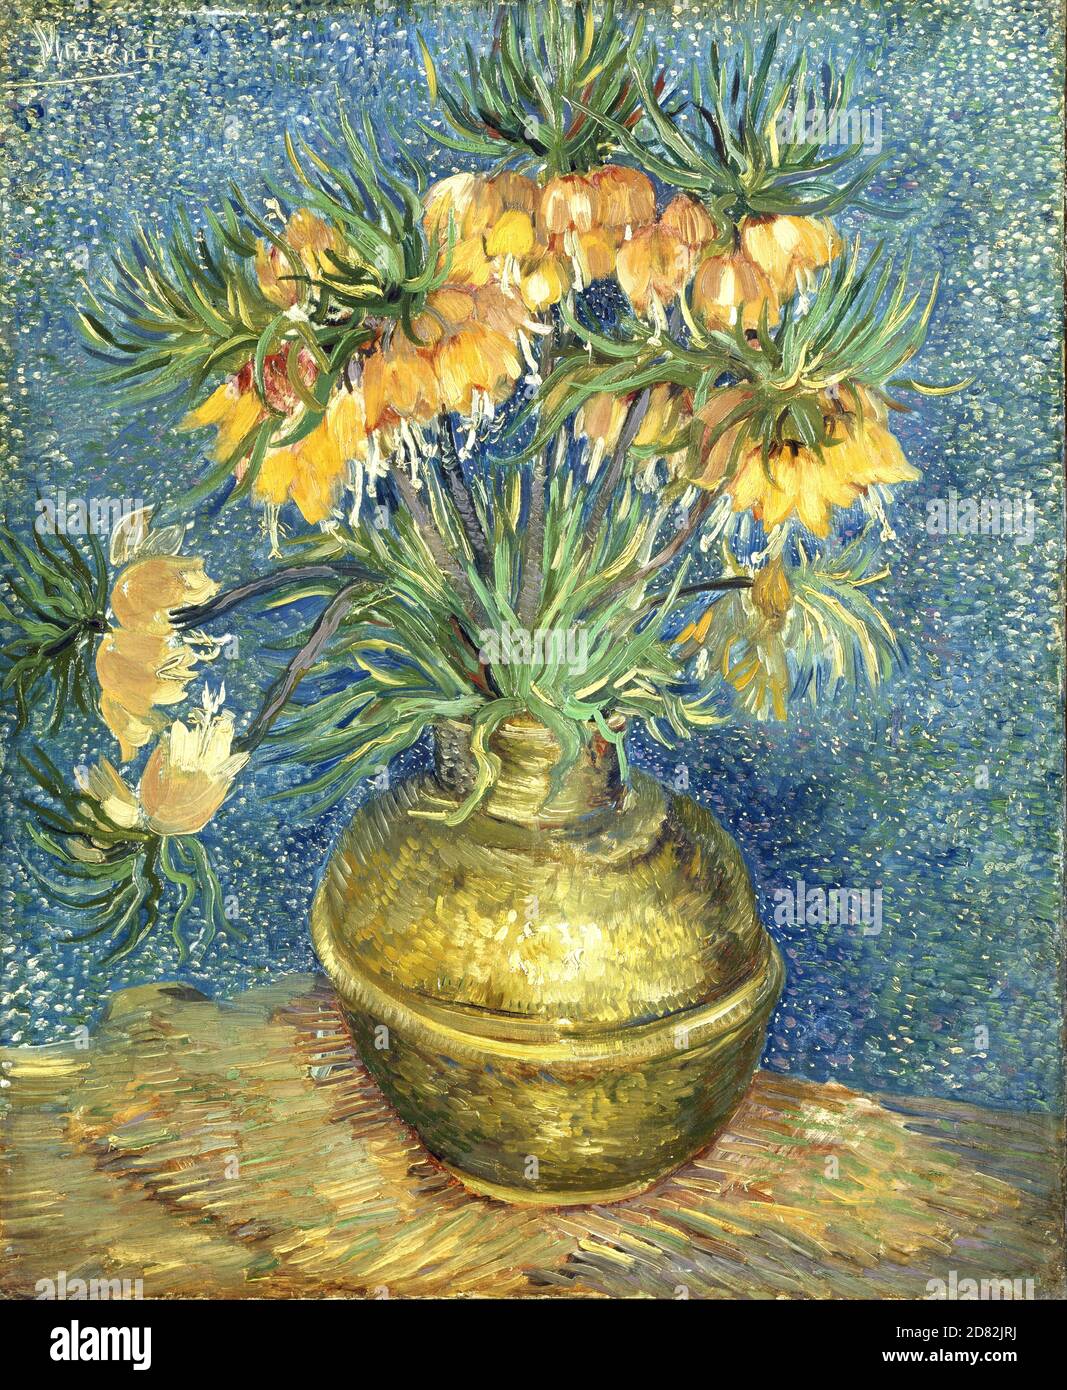 Título: Fríllaries imperiales de la Corona en un jarrón de Cobre Creador: Vincent van Gogh Fecha: 1886 Medio: Óleo sobre lienzo Dimensiones: 73 x 60.5 cm ubicación: Musee d'Orsay, Paris Foto de stock